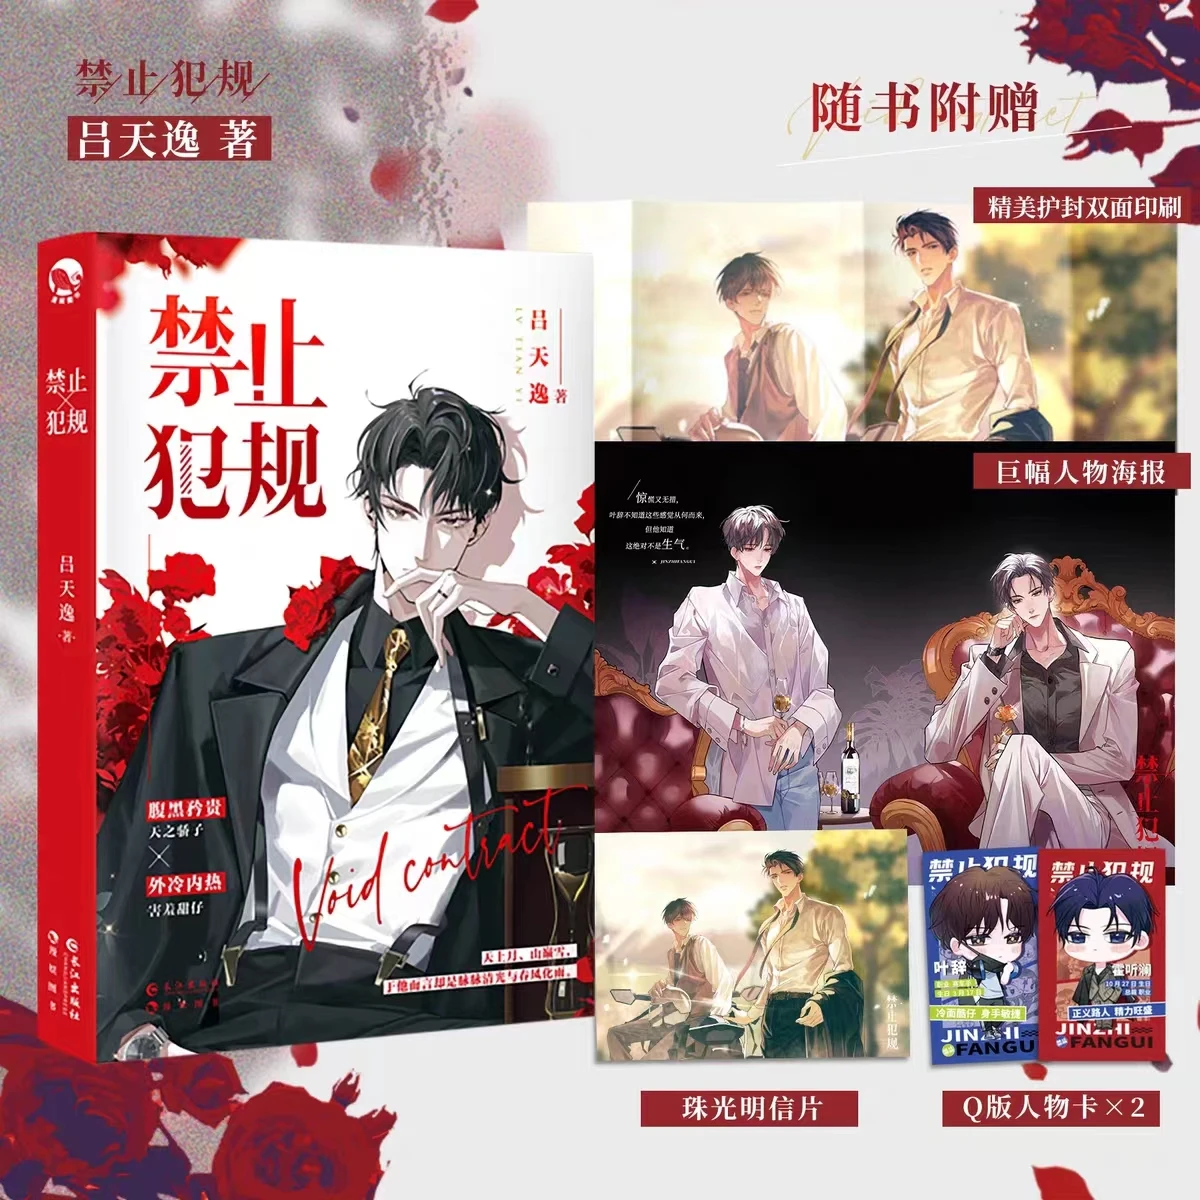 

Chinese Book New Void Contract Jin Zhi Fan Gui Original Novel Huo Tinglan, Ye Ci Boy Love Youth Romance Sweet BL Fiction